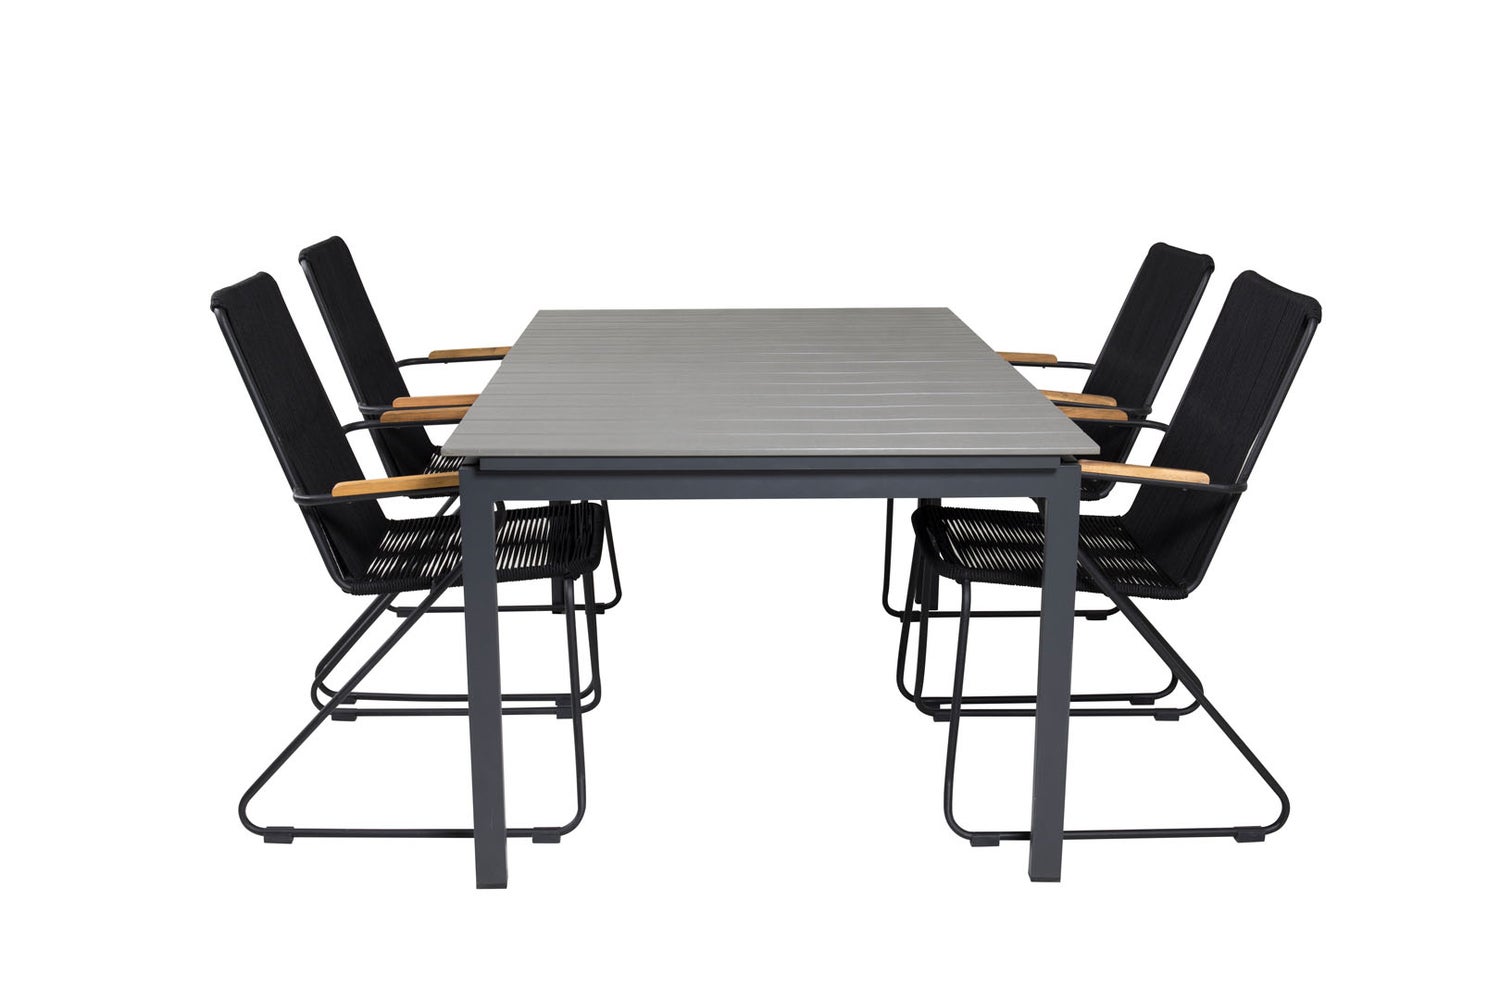 Levels Gartenset Tisch 100x160/240cm und 4 Stühle Armlehne Bois schwarz, grau.